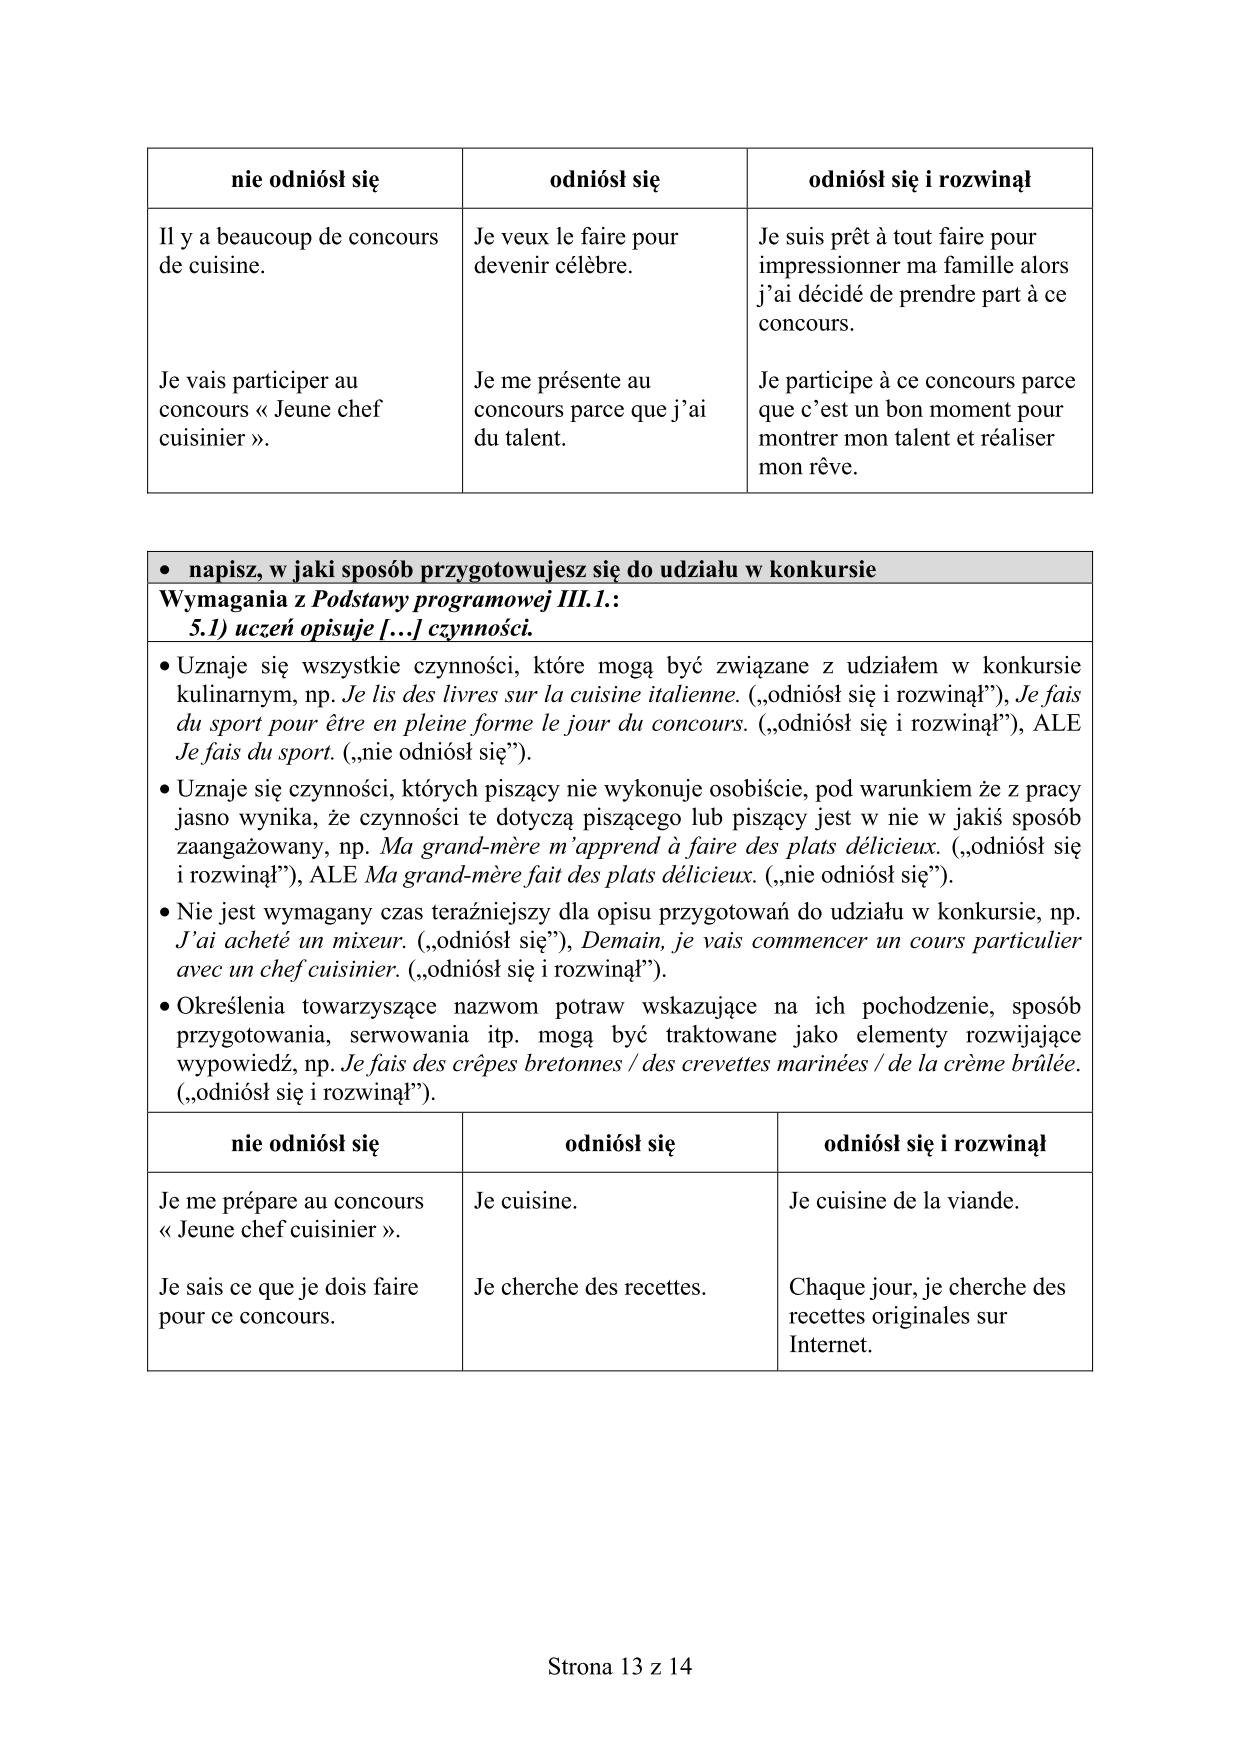 odpowiedzi-francuski-poziom-rozszerzony-egzamin-gimnazjalny-2017 - 13